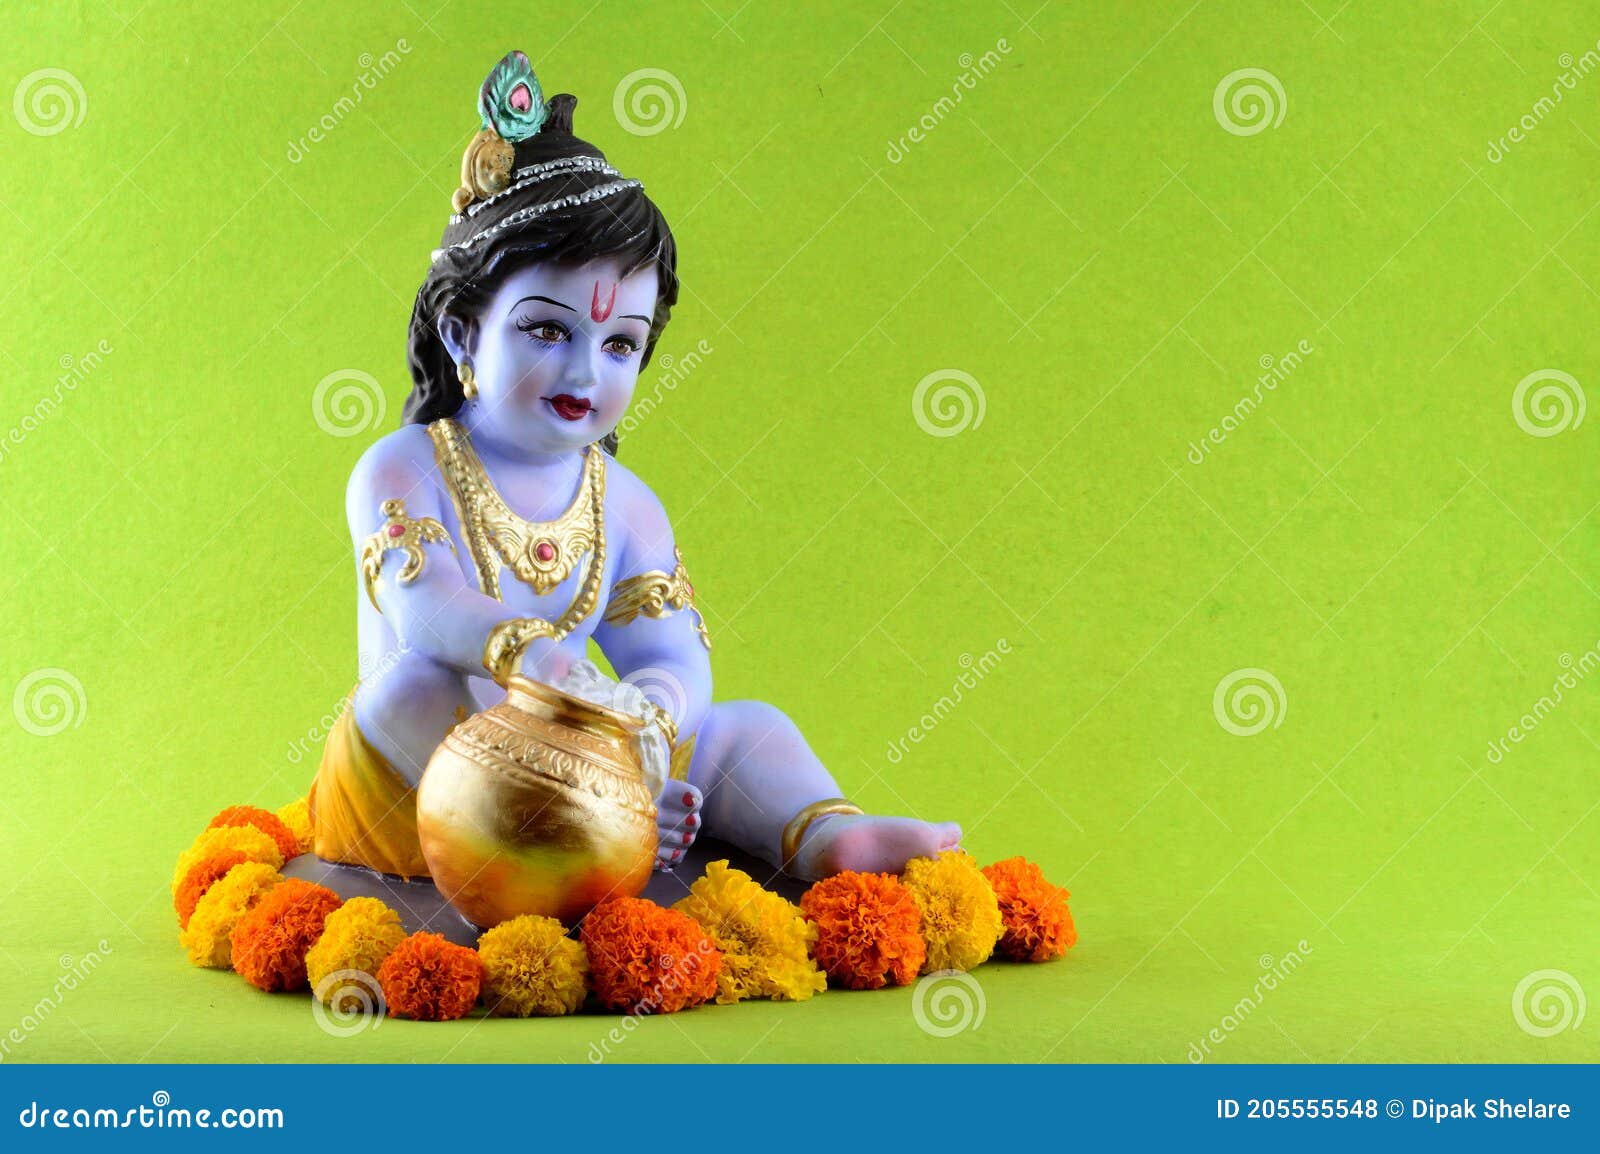 Hindu God Photos Download Free Hindu God Stock Photos  HD Images